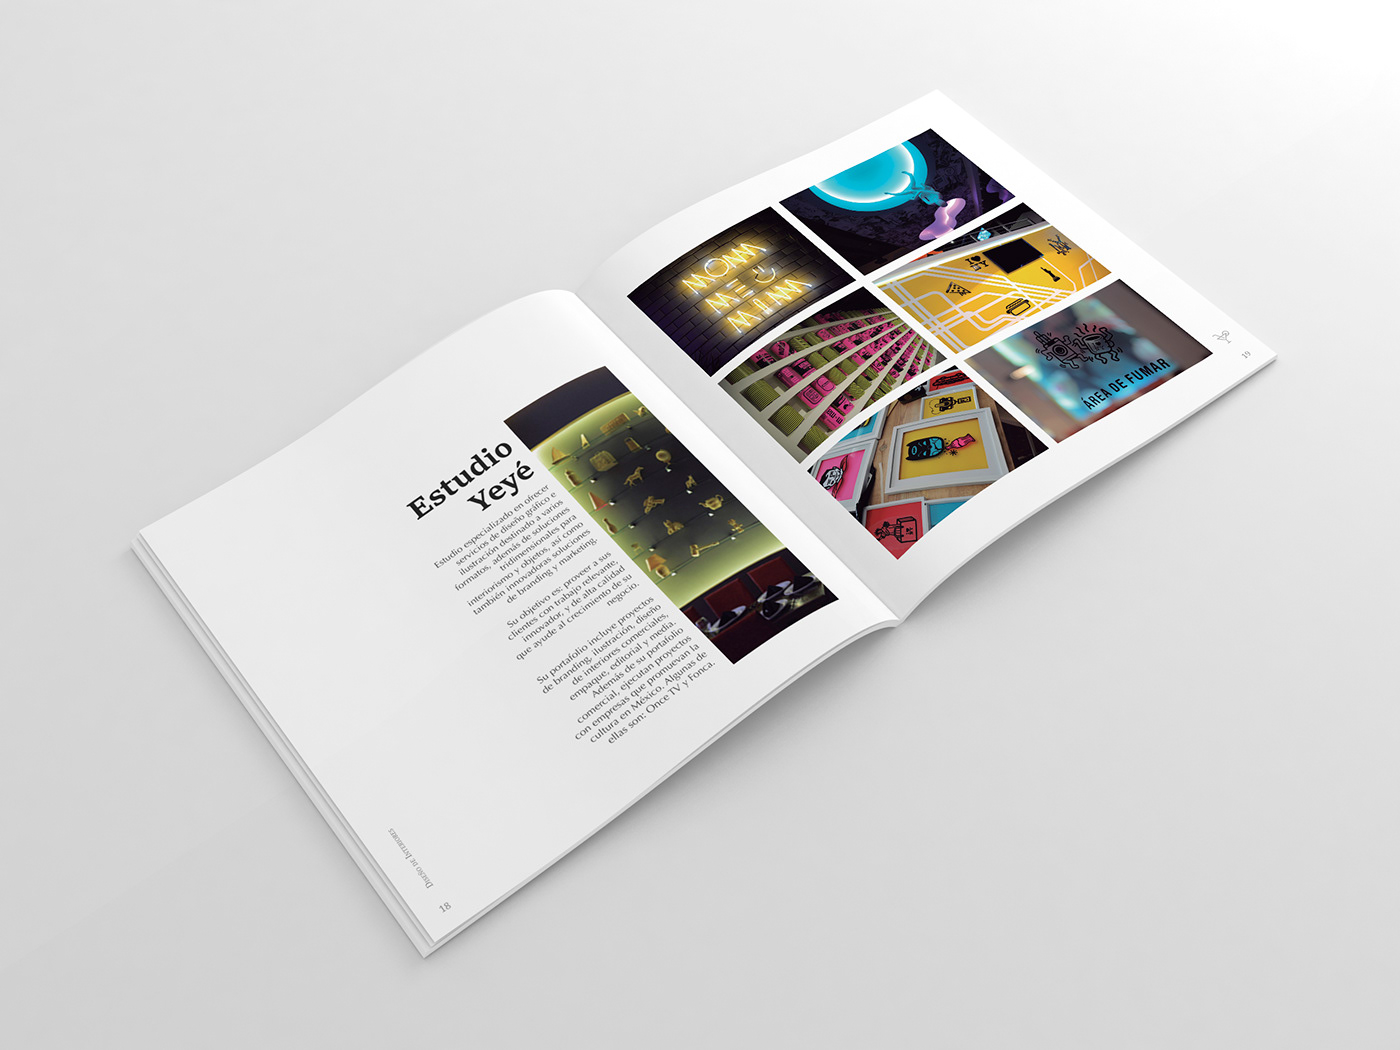 Diseño editorial diseño de experiencia diseño gráfico editorial design  diseñadora mexicana diseño mexicano